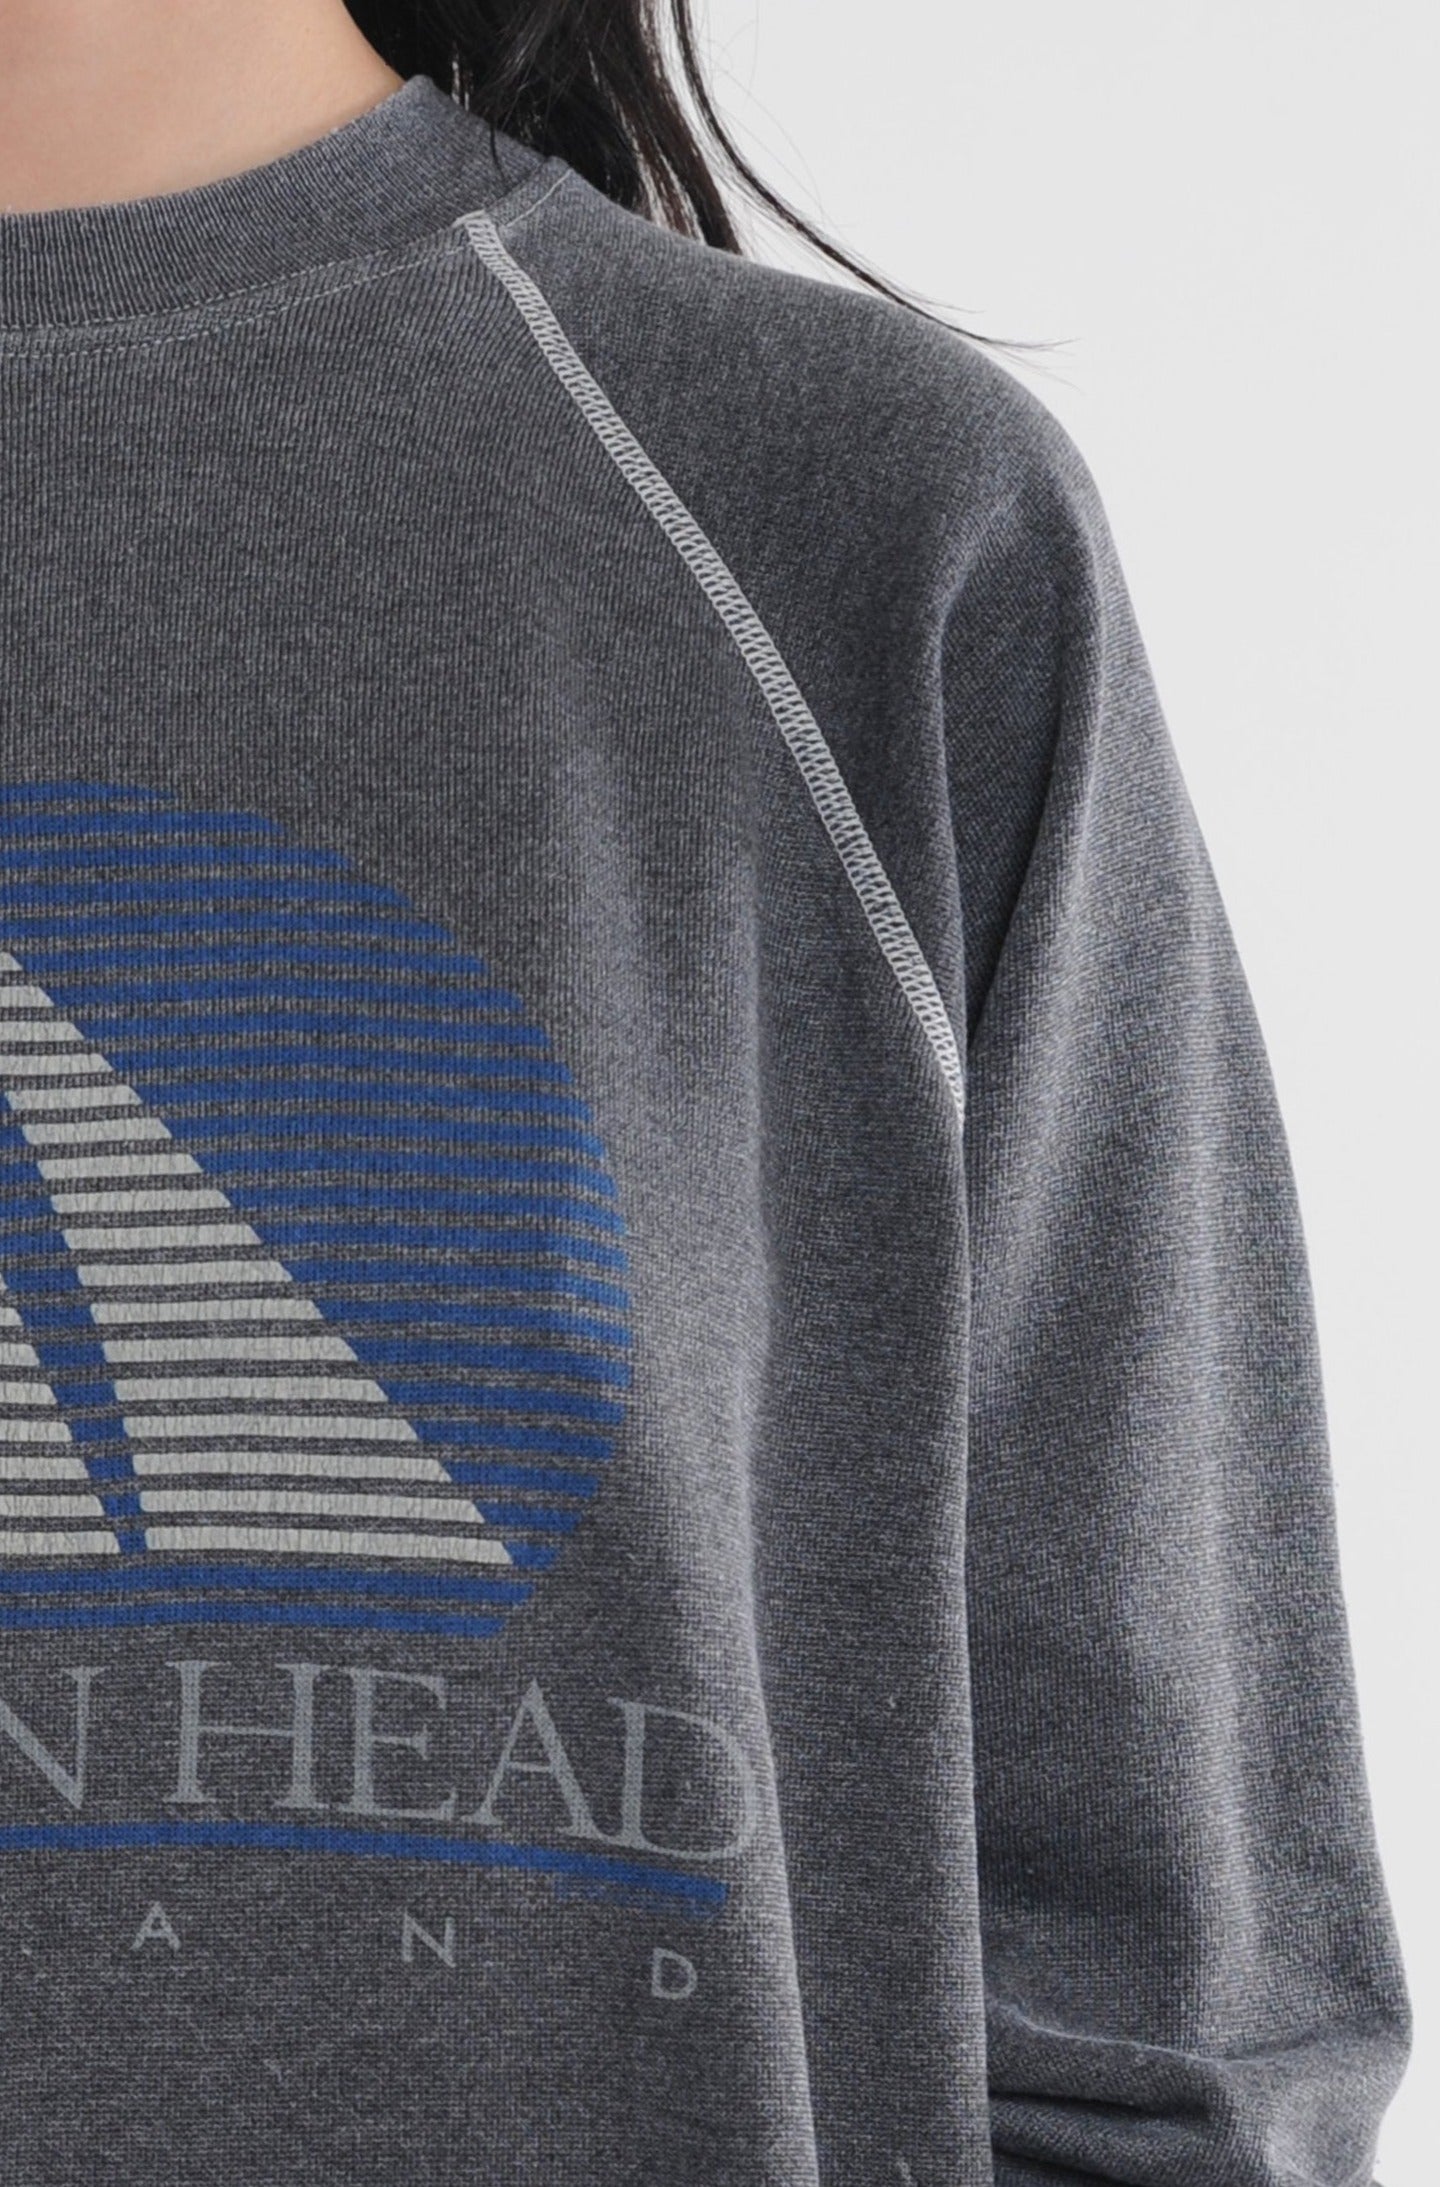 Hilton Head Island Sweatshirt